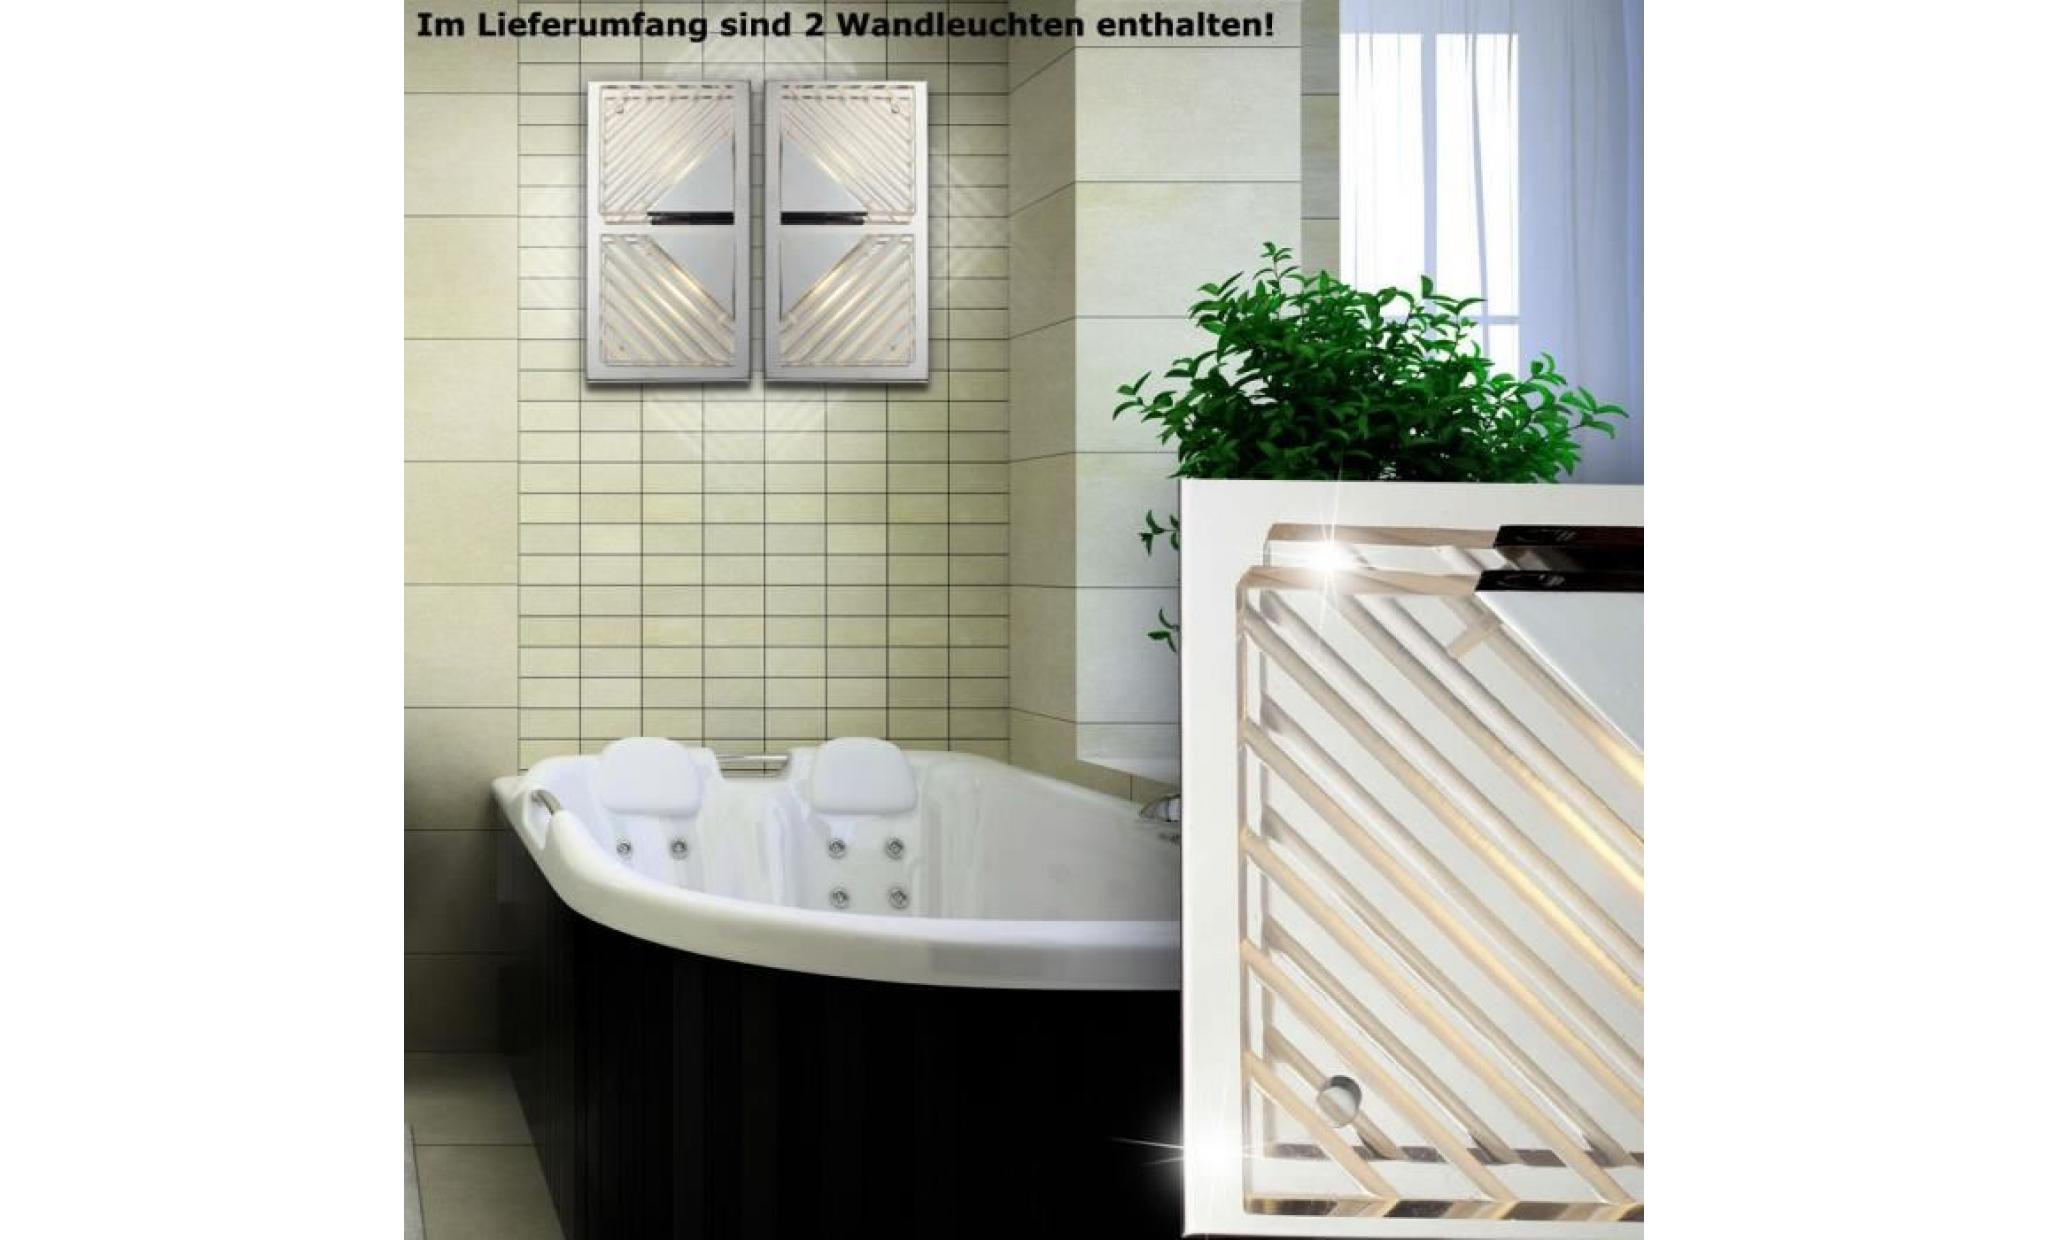 2 x plafonnier led cob applique chrome aluminium lampe couloir salle de bains pas cher